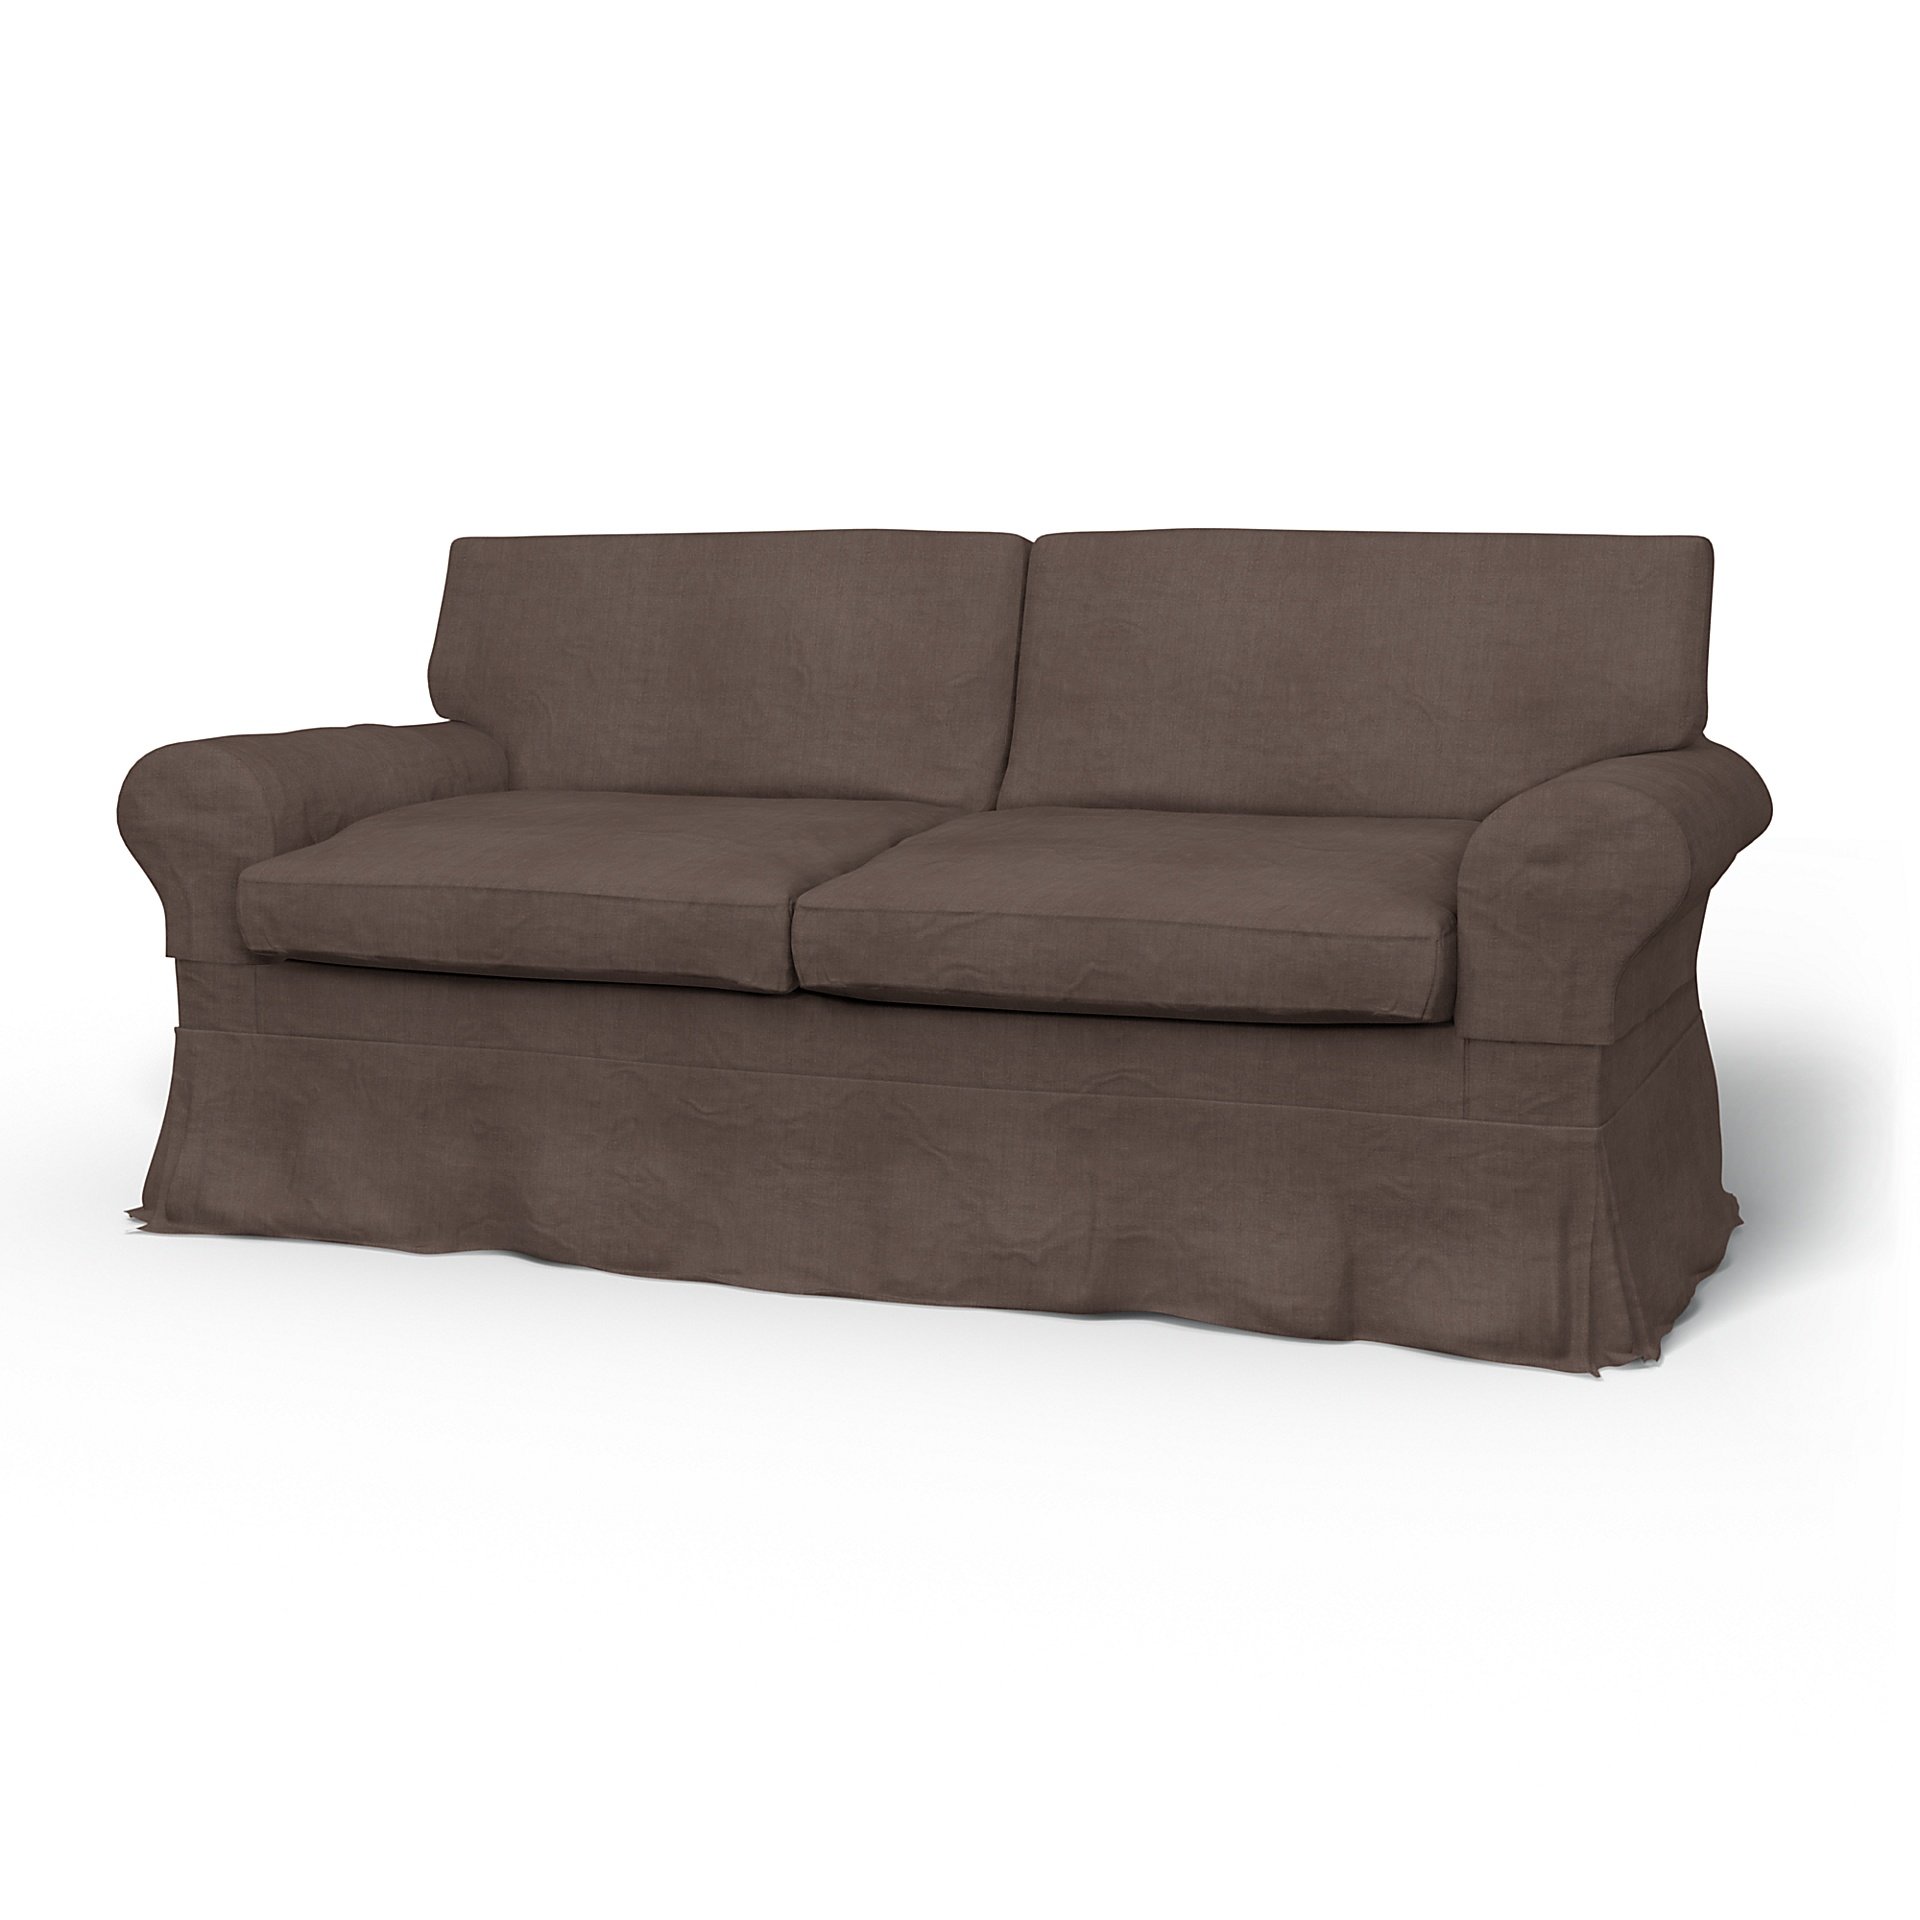 IKEA - Ektorp 2 Seater Sofa Bed Cover, Cocoa, Linen - Bemz